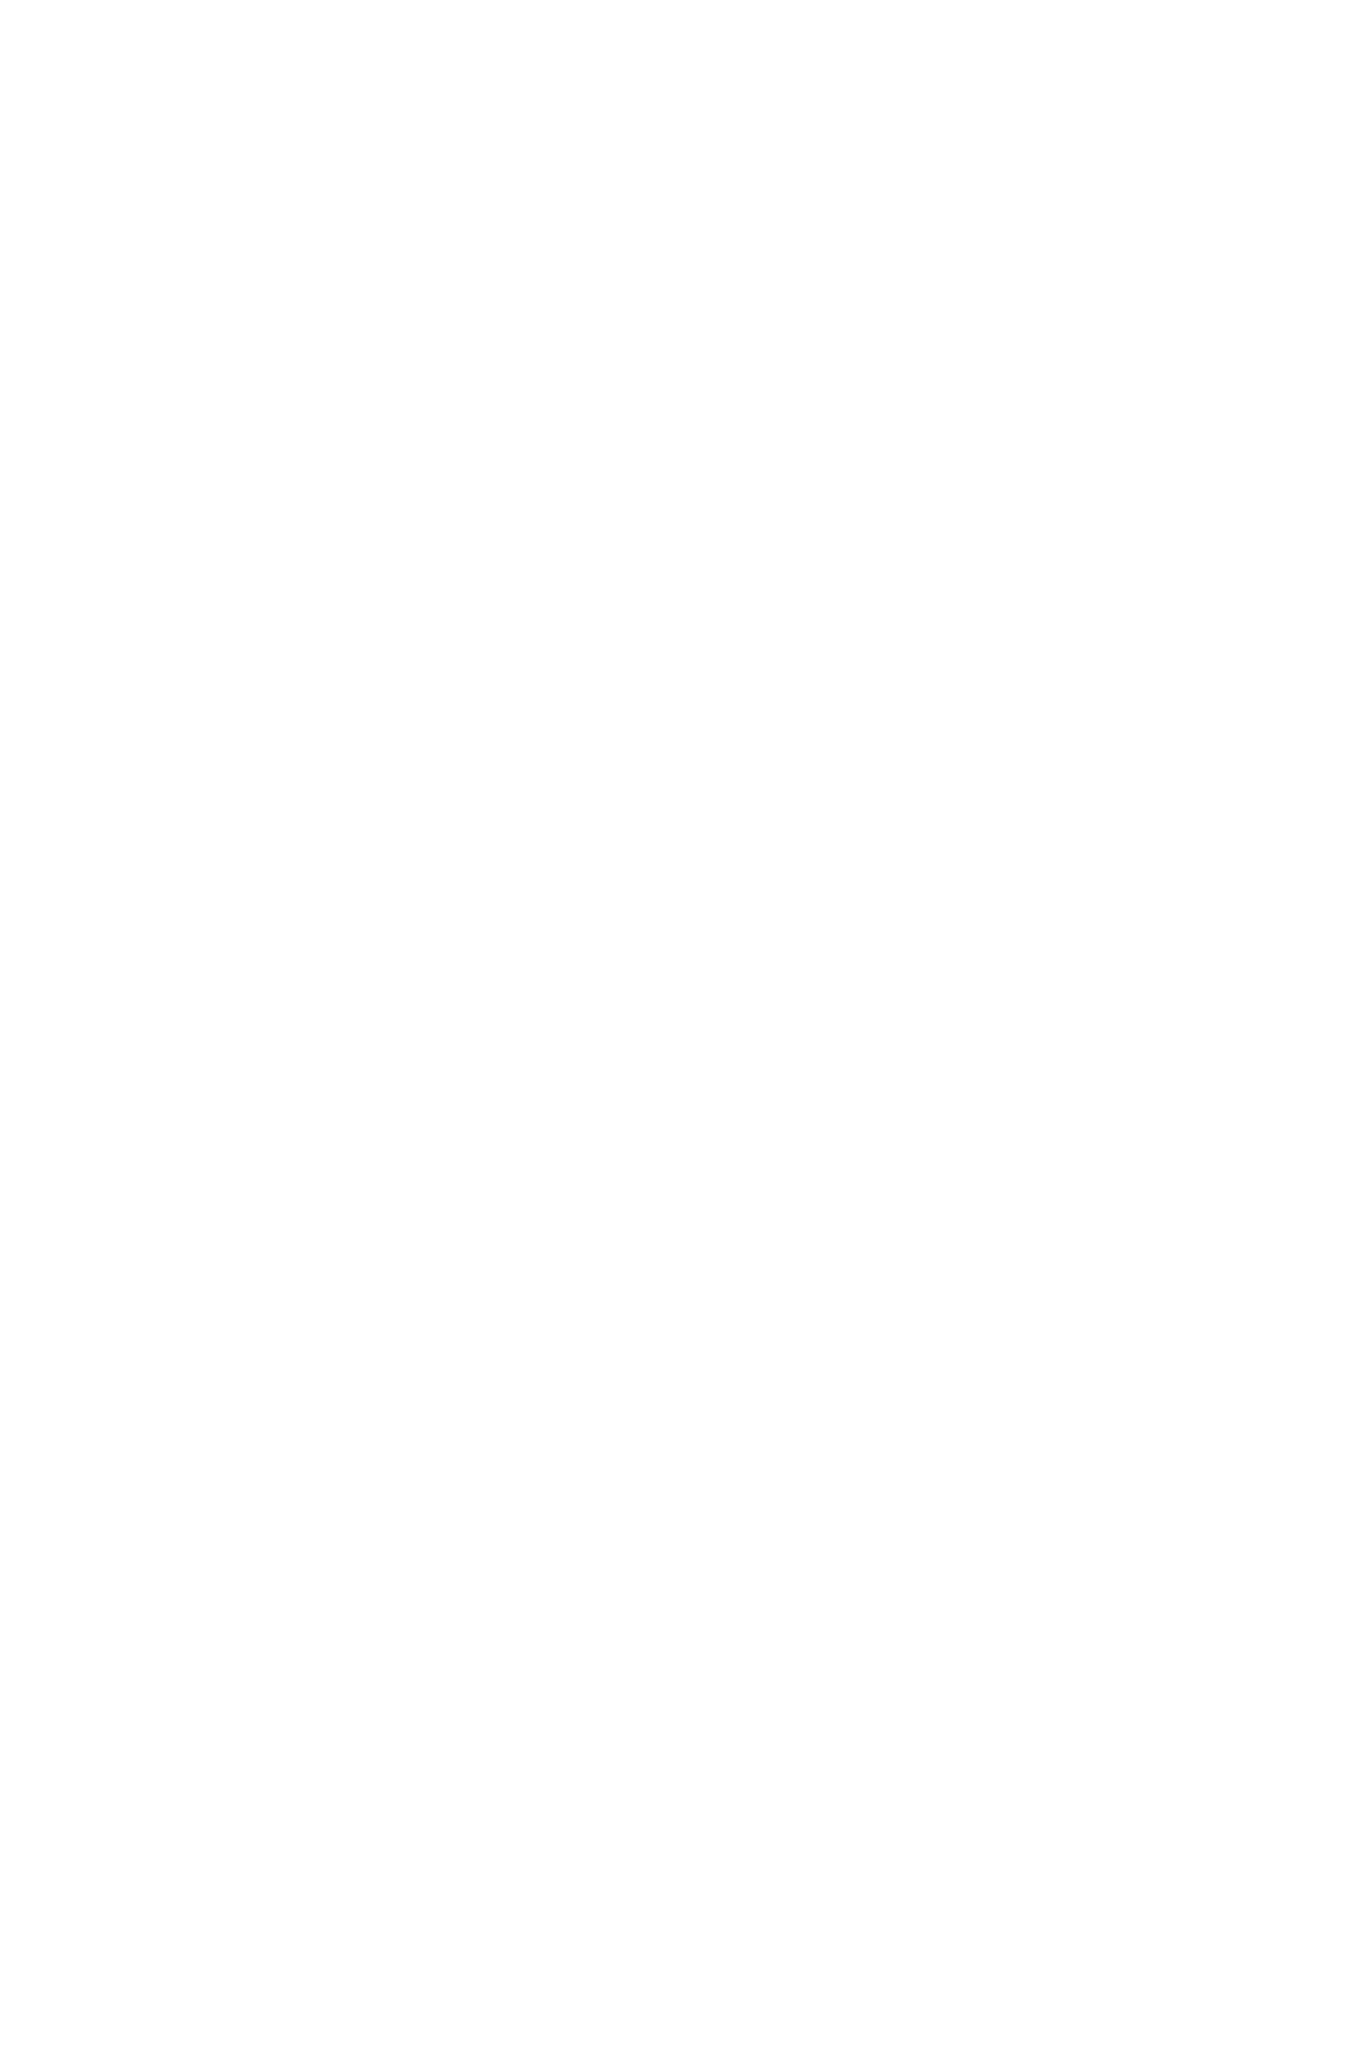 девушка в пуховике и вышитом шарфе на фоне растительной композиции с фигурами голубей, фотосессия в городе, стрит-портрет, фотопрогулка, фотограф Георгий Безбородов